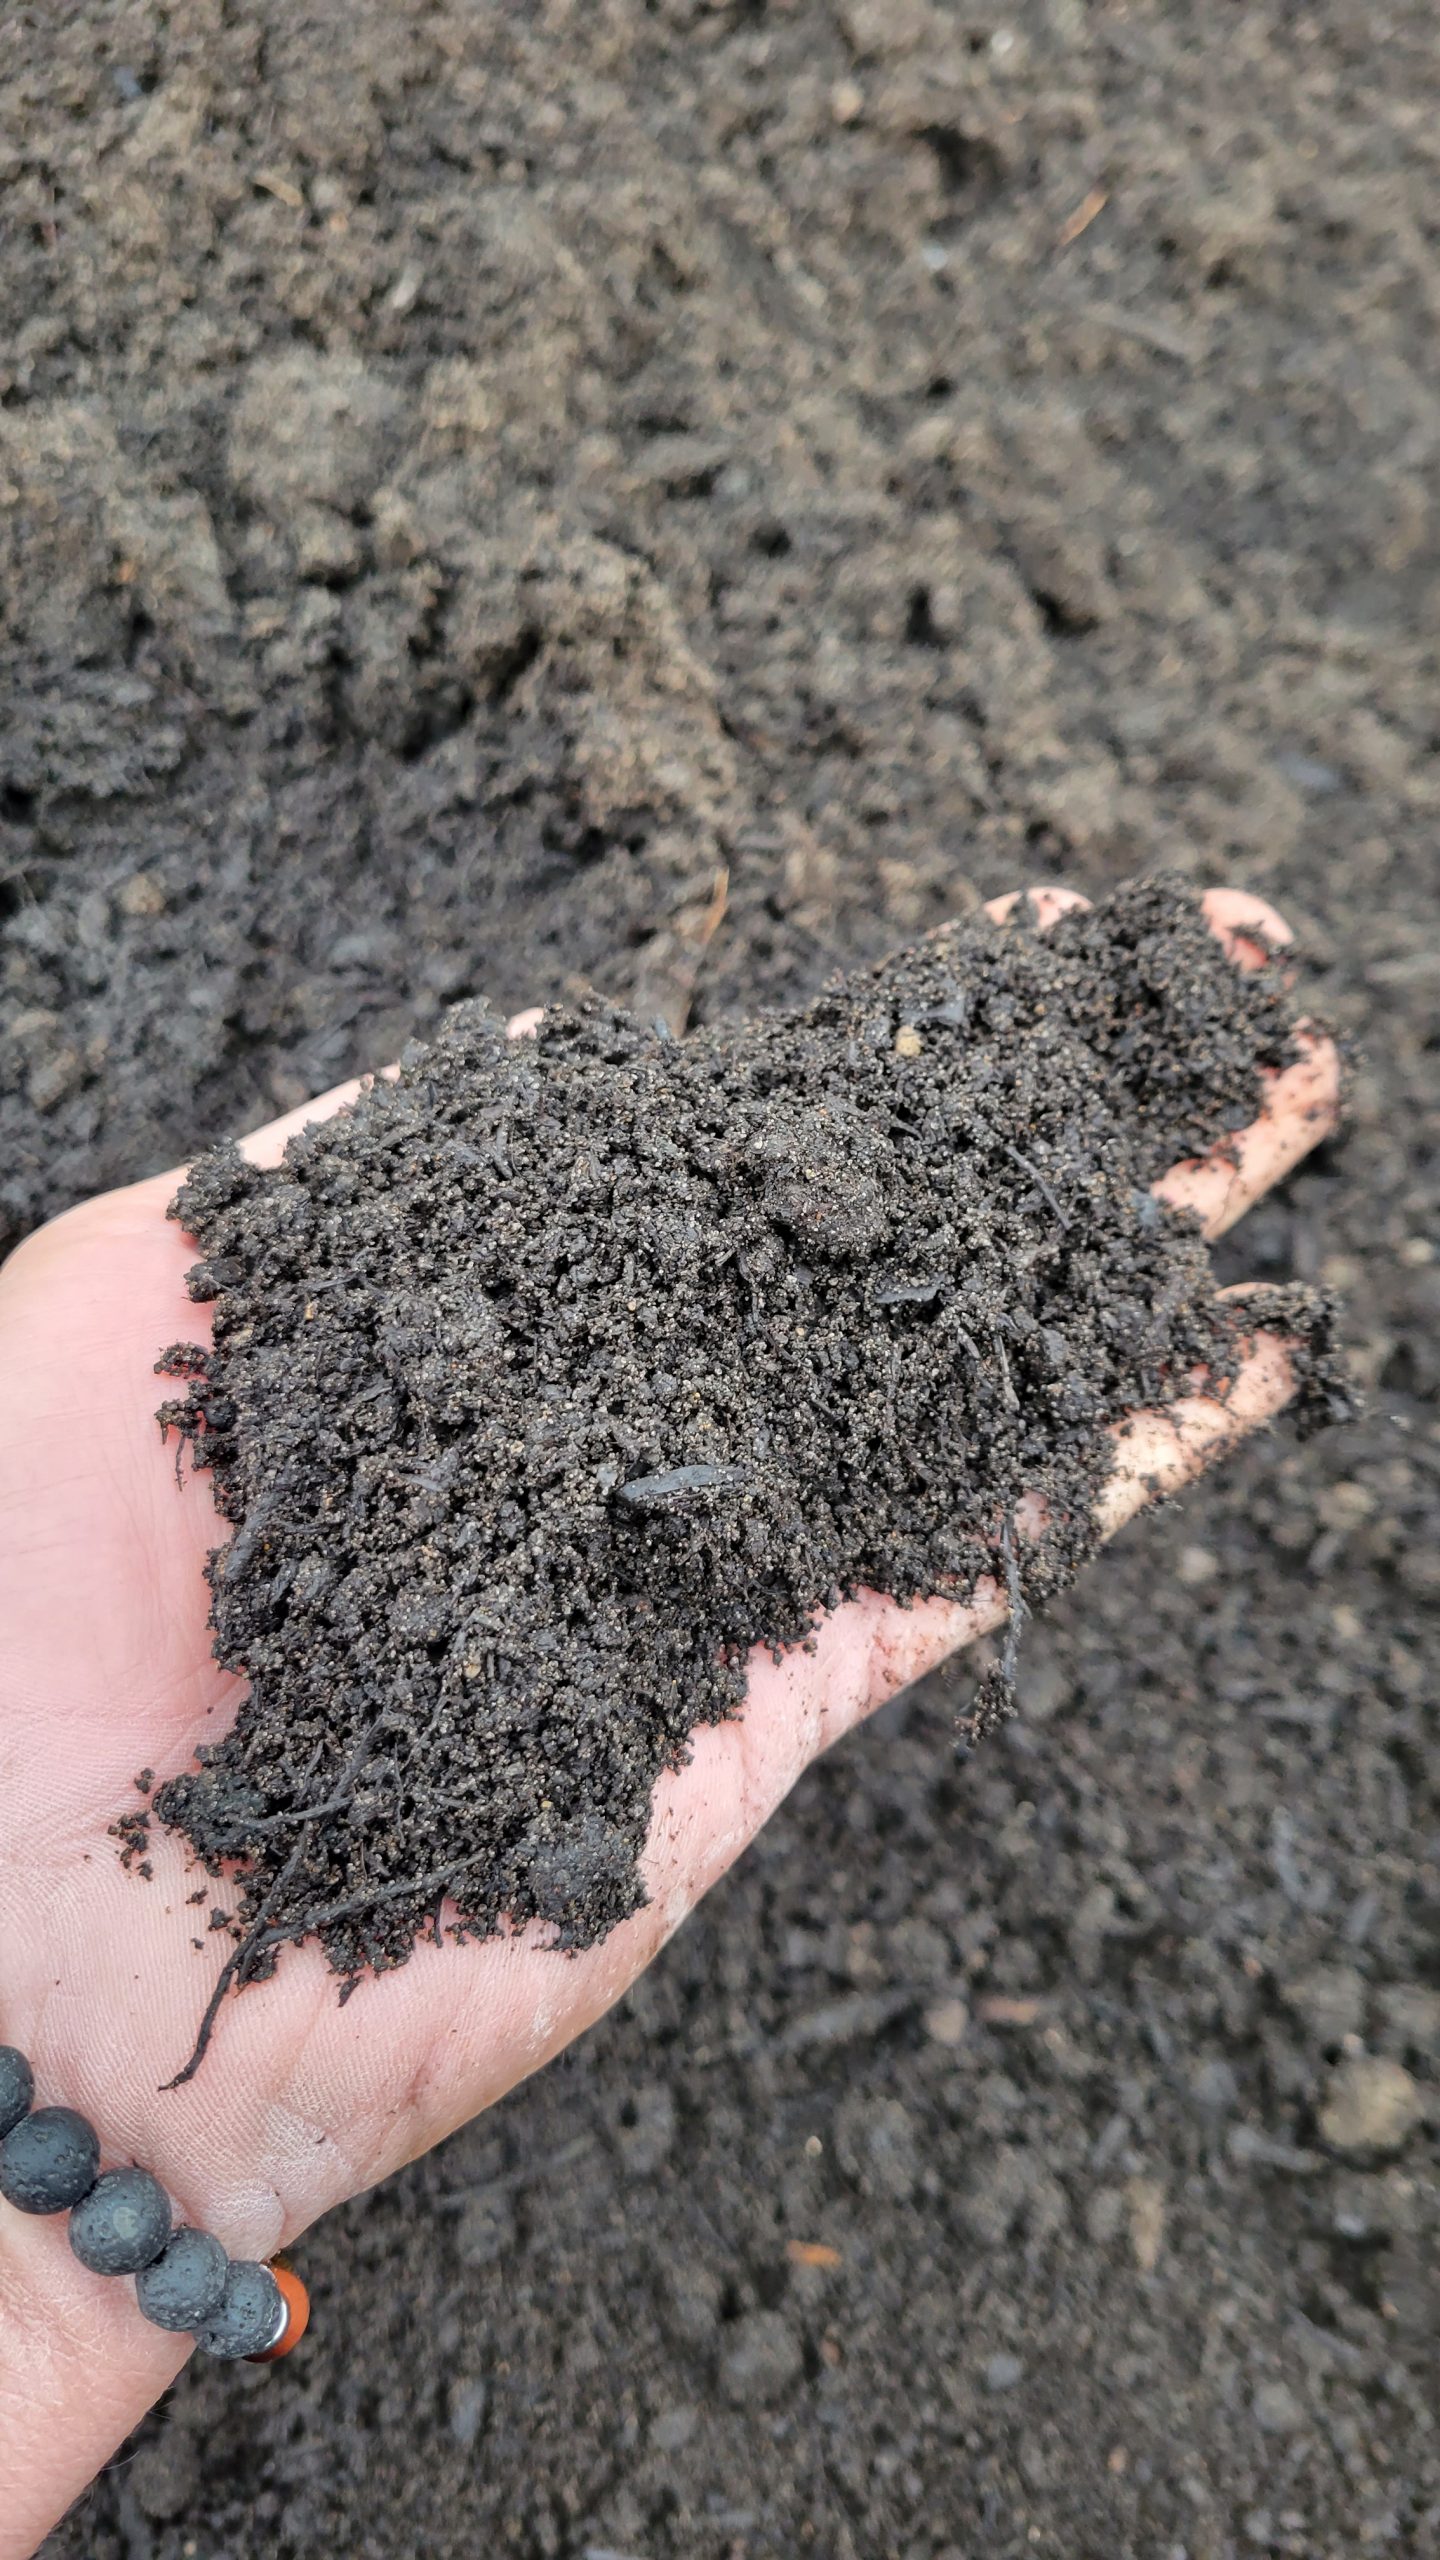 Pure Compost